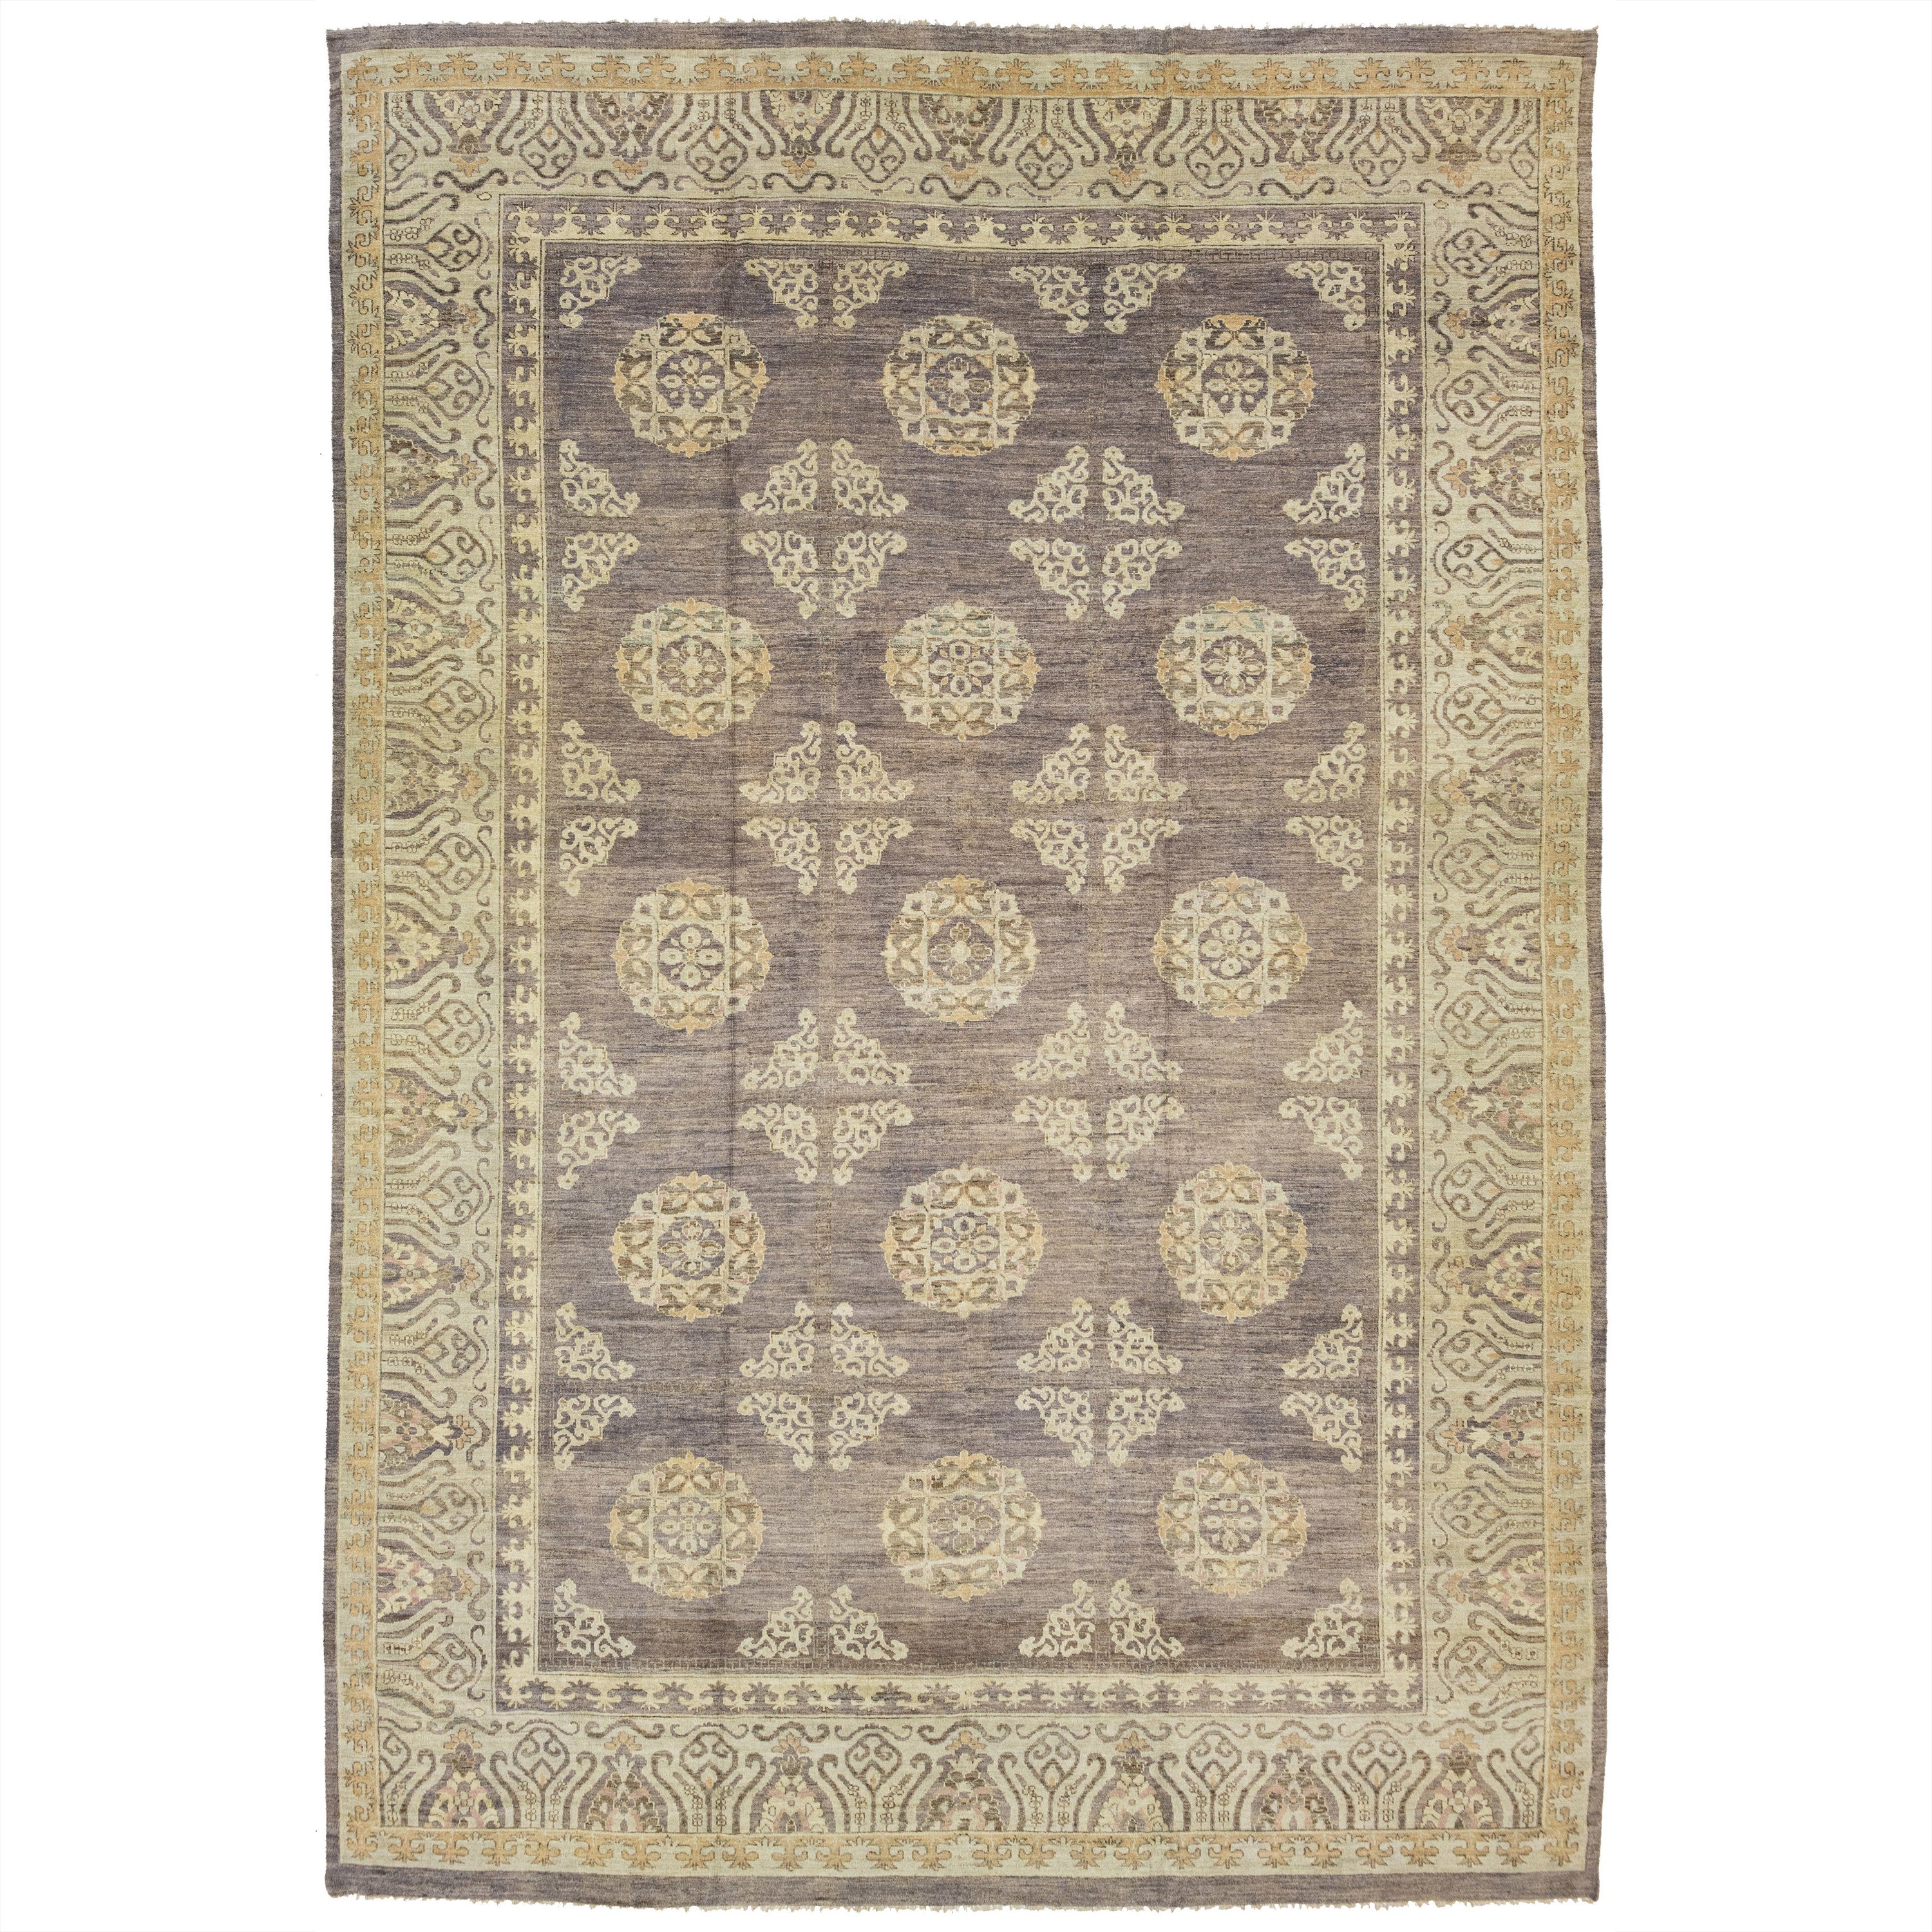 Allover Designed Modern Khotan Wolle Teppich Handmade In Brown und Blau Feld Farben 